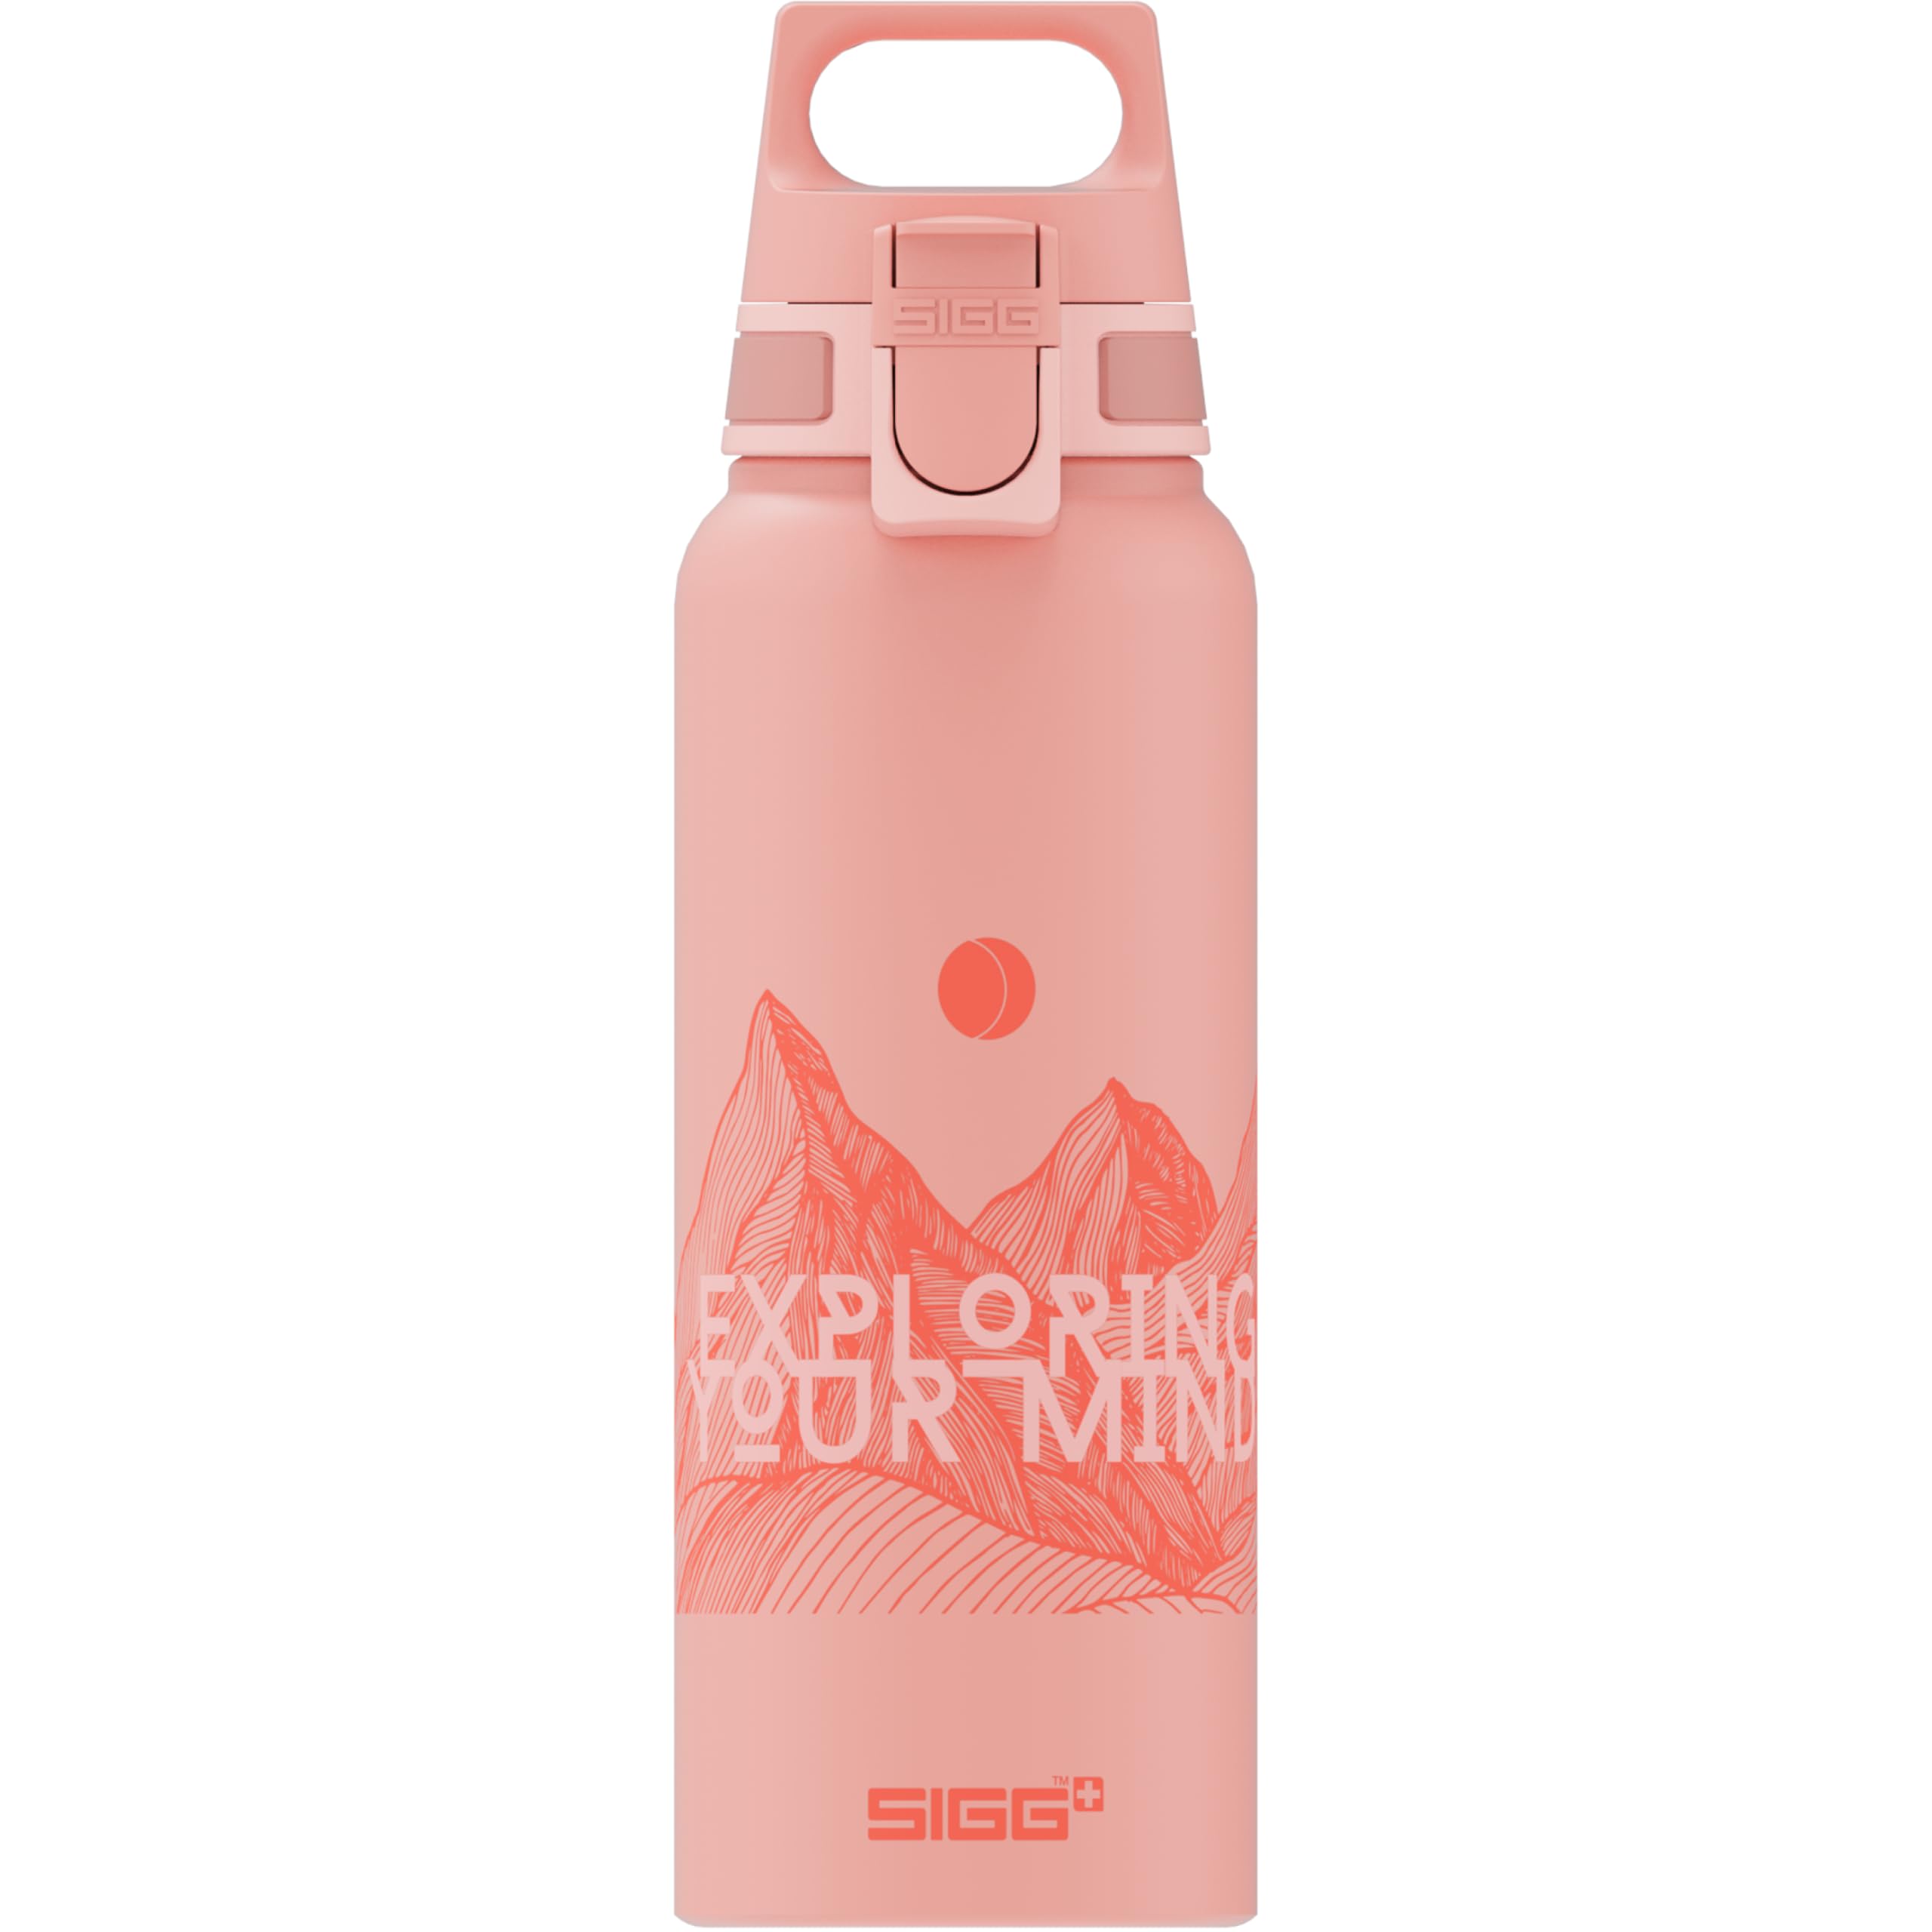 SIGG WMB ONE Pathfinder Shy Pink Wasserflasche (1.0 L), schadstofffreie und auslaufsichere Trinkflasche, federleichte Trinkflasche aus Aluminium, Made in Switzerland